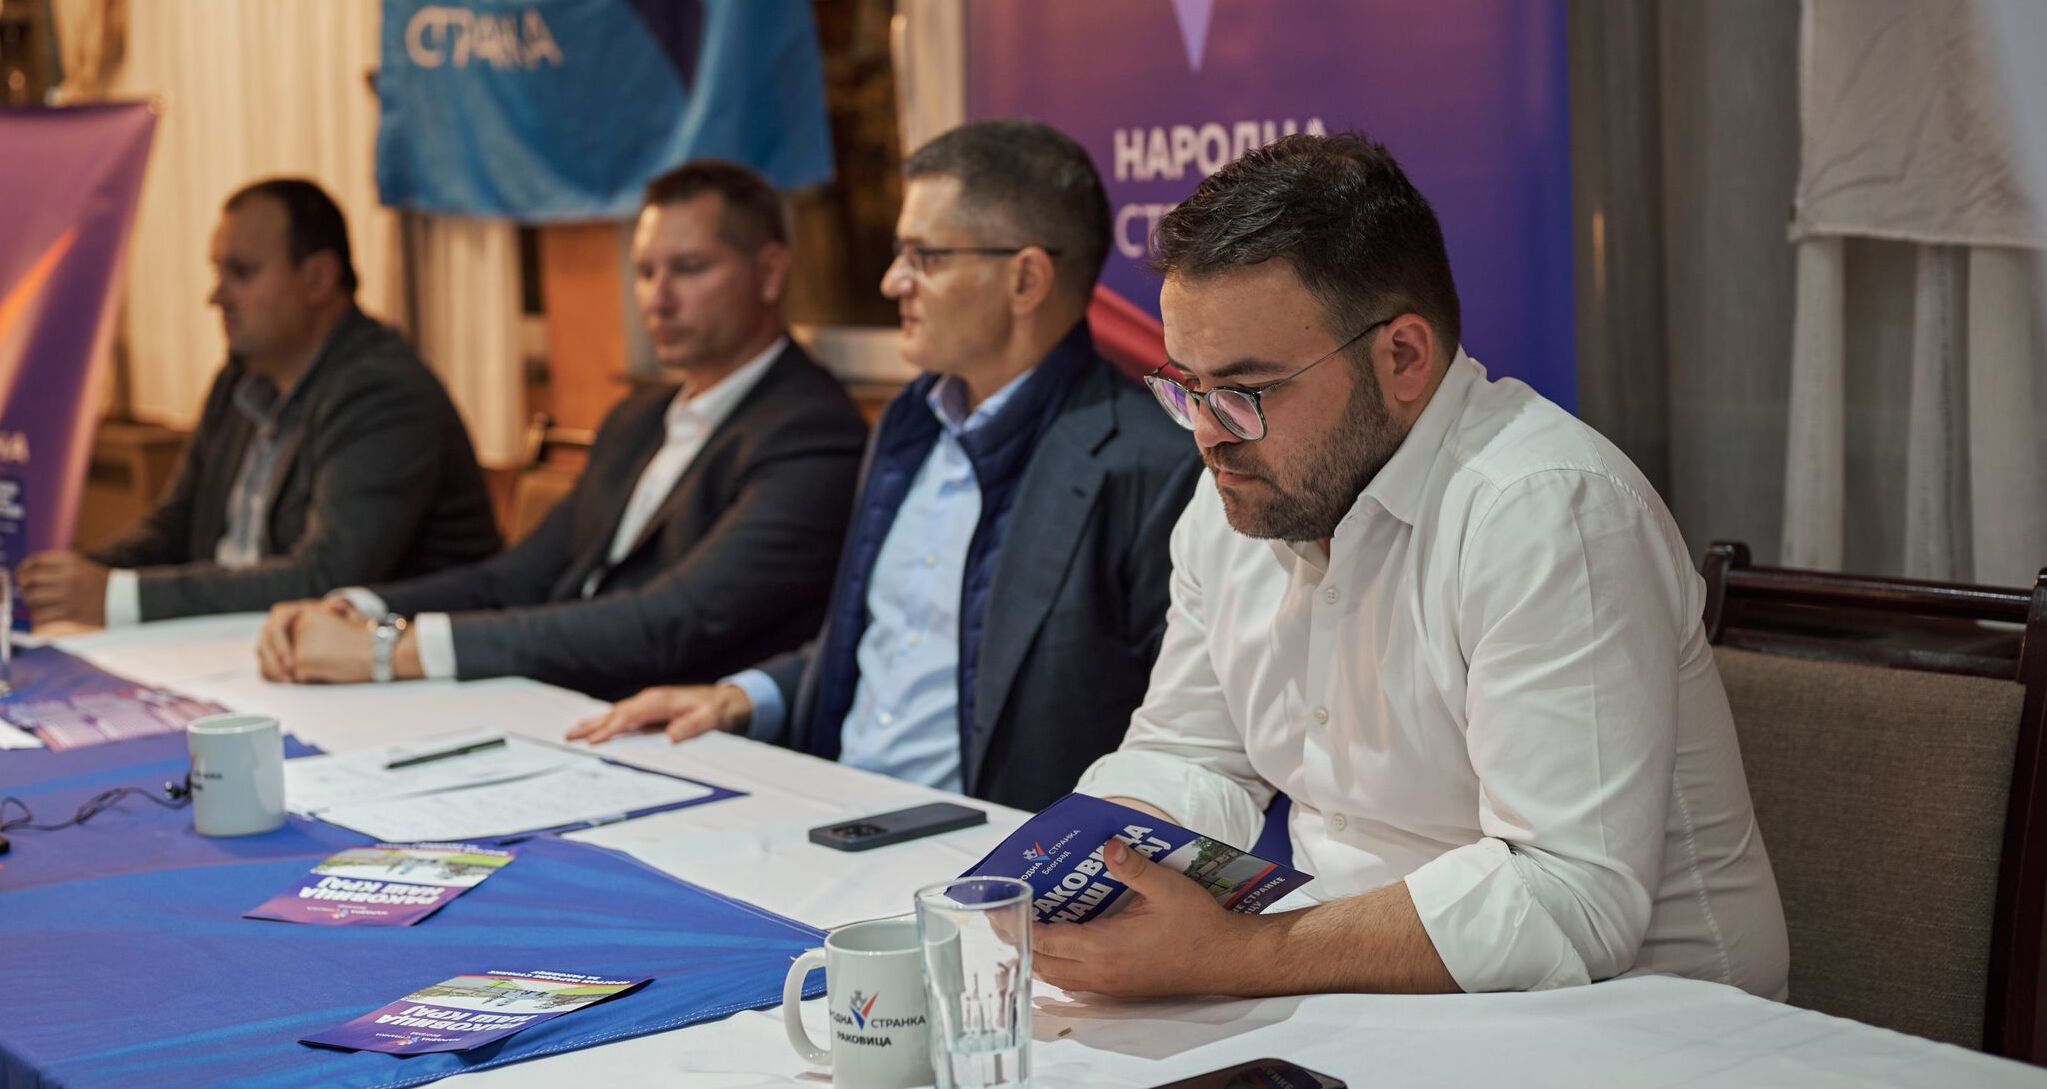 Београд: Општински одбор Народне странке Раковица изабрао делегате за страначку скупштину, заказану за 22. октобар